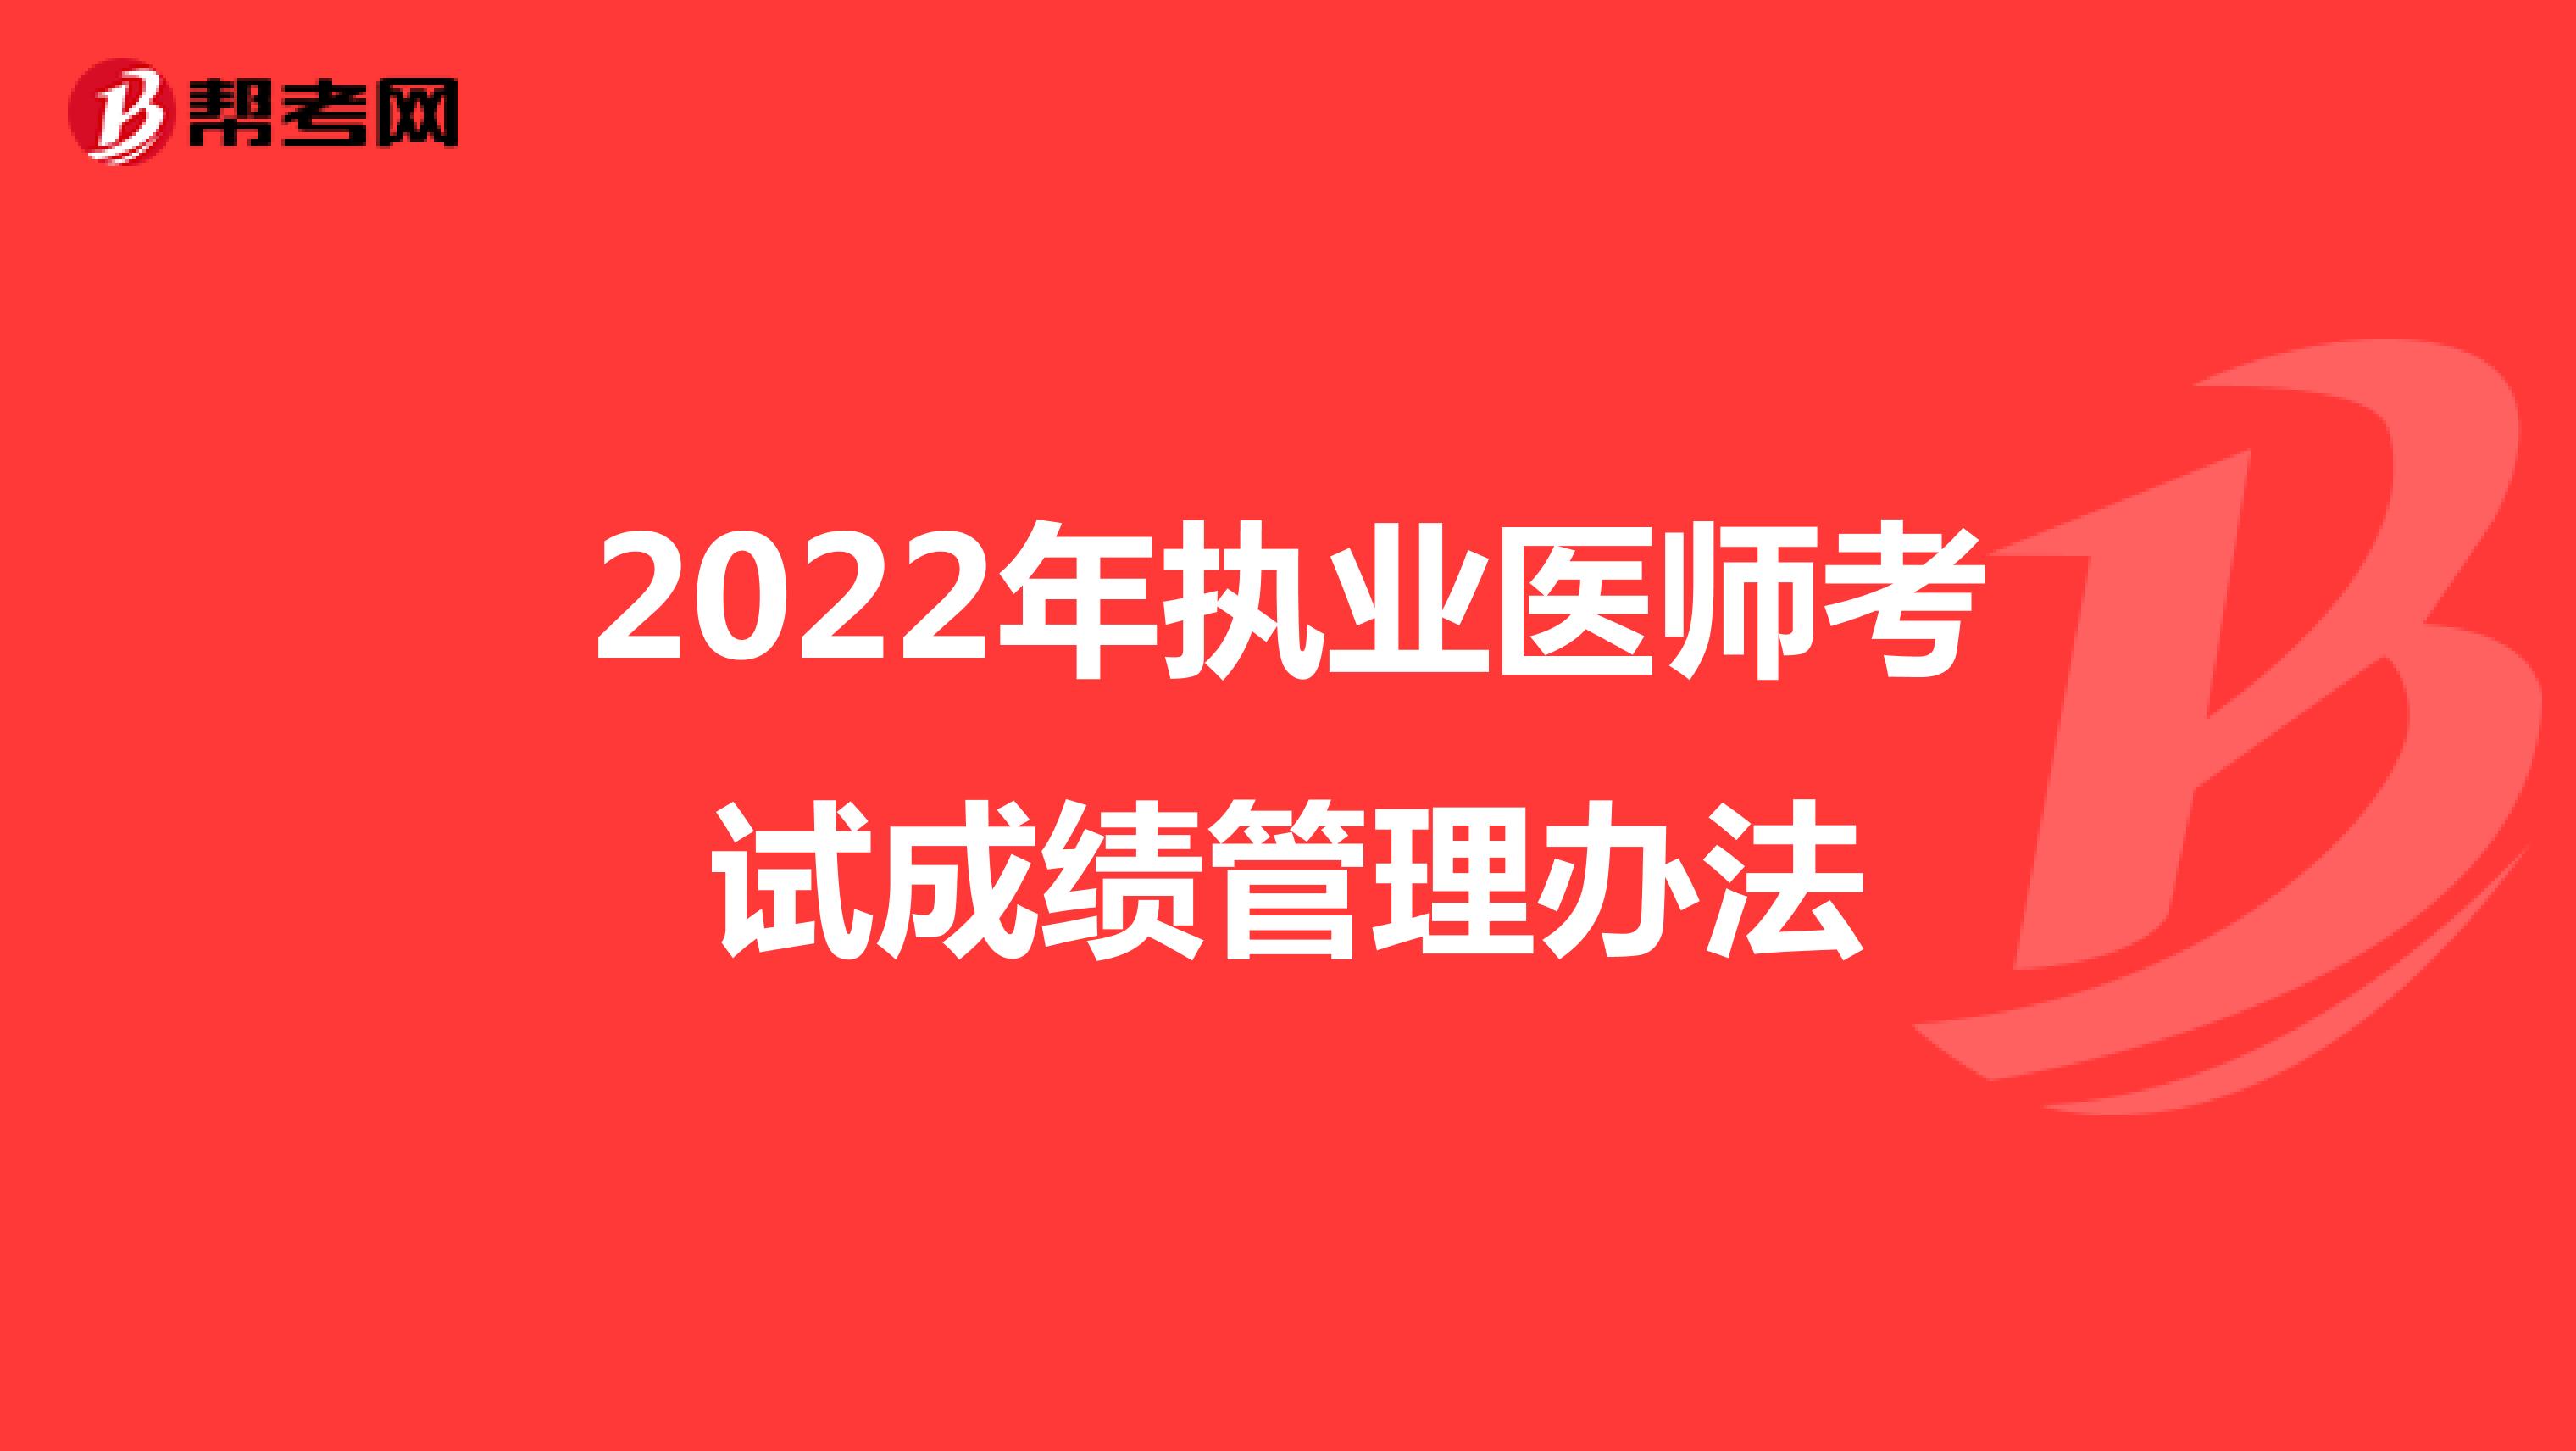 2022年执业医师考试成绩管理办法